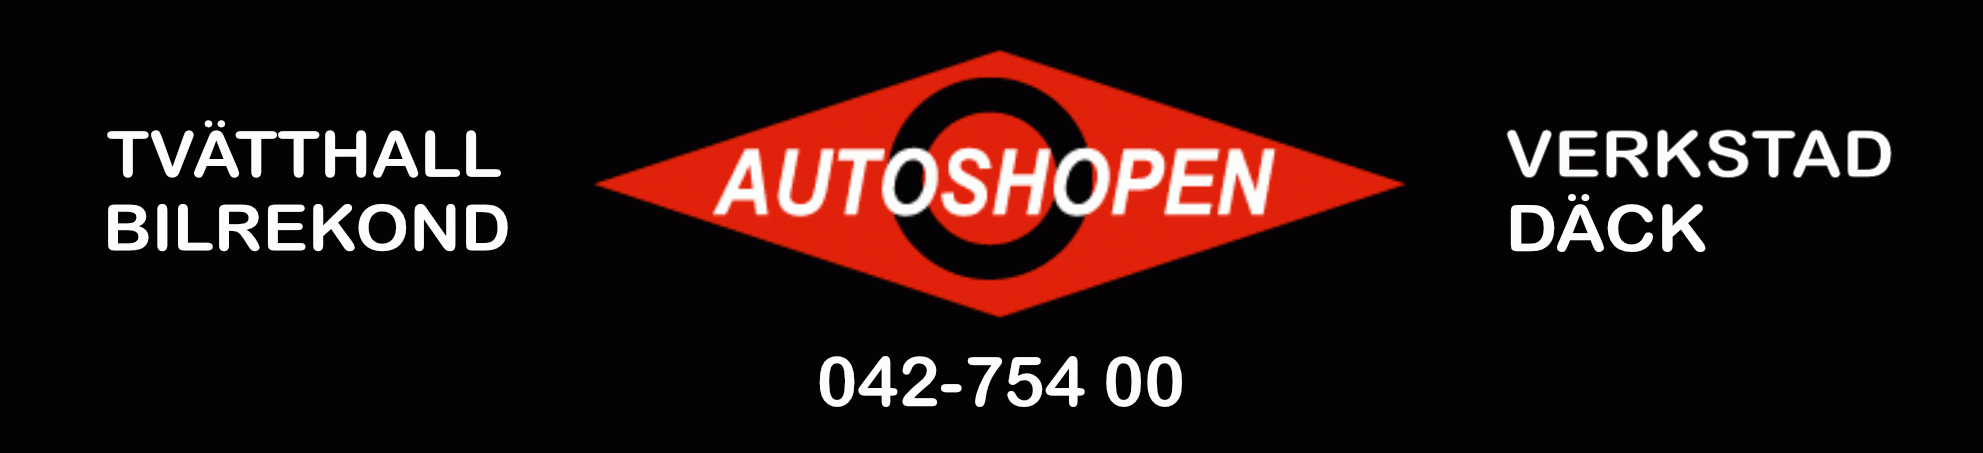 Autoshopen logo